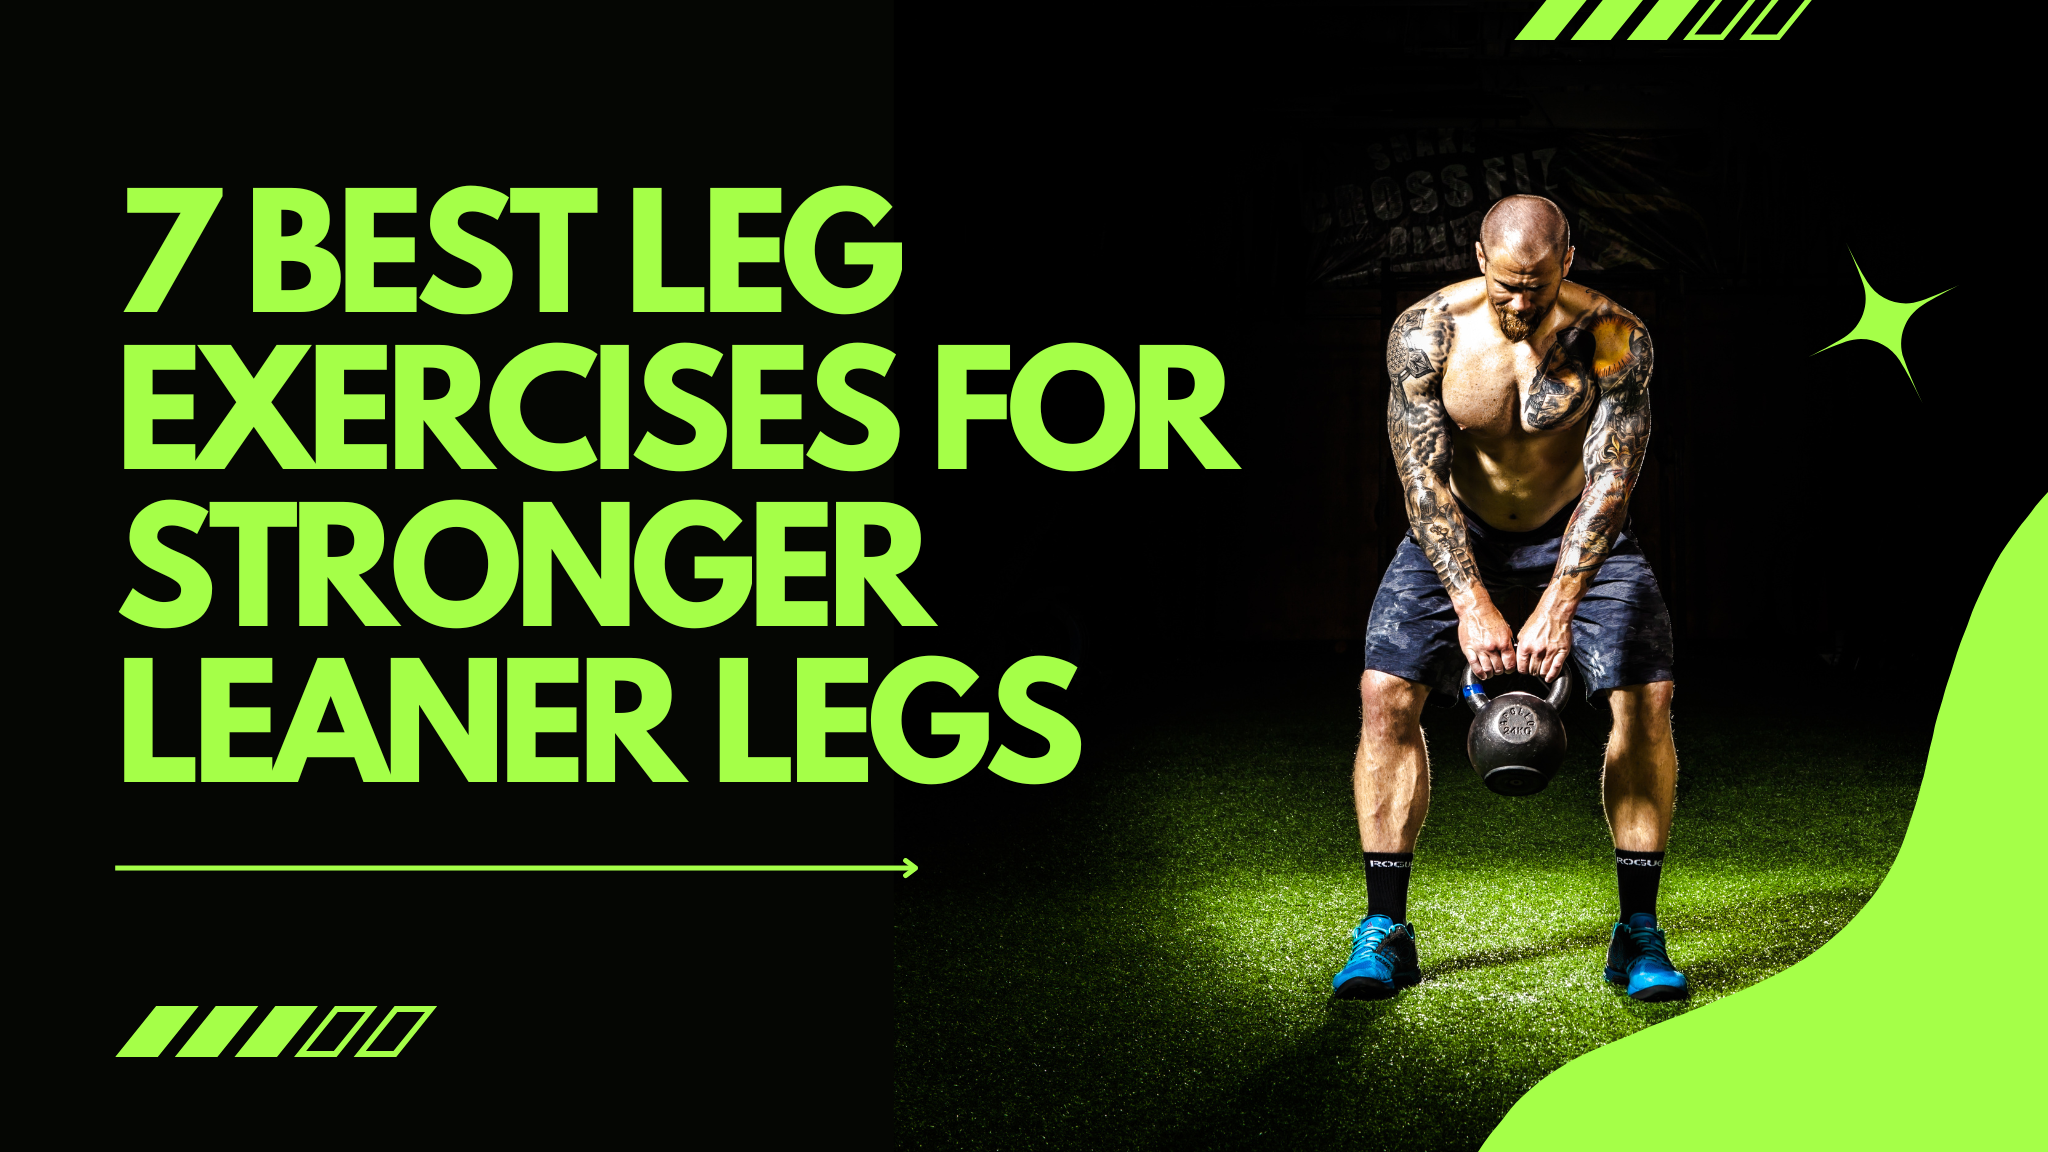 7 Best Leg Exercises for Stronger Leaner Legs